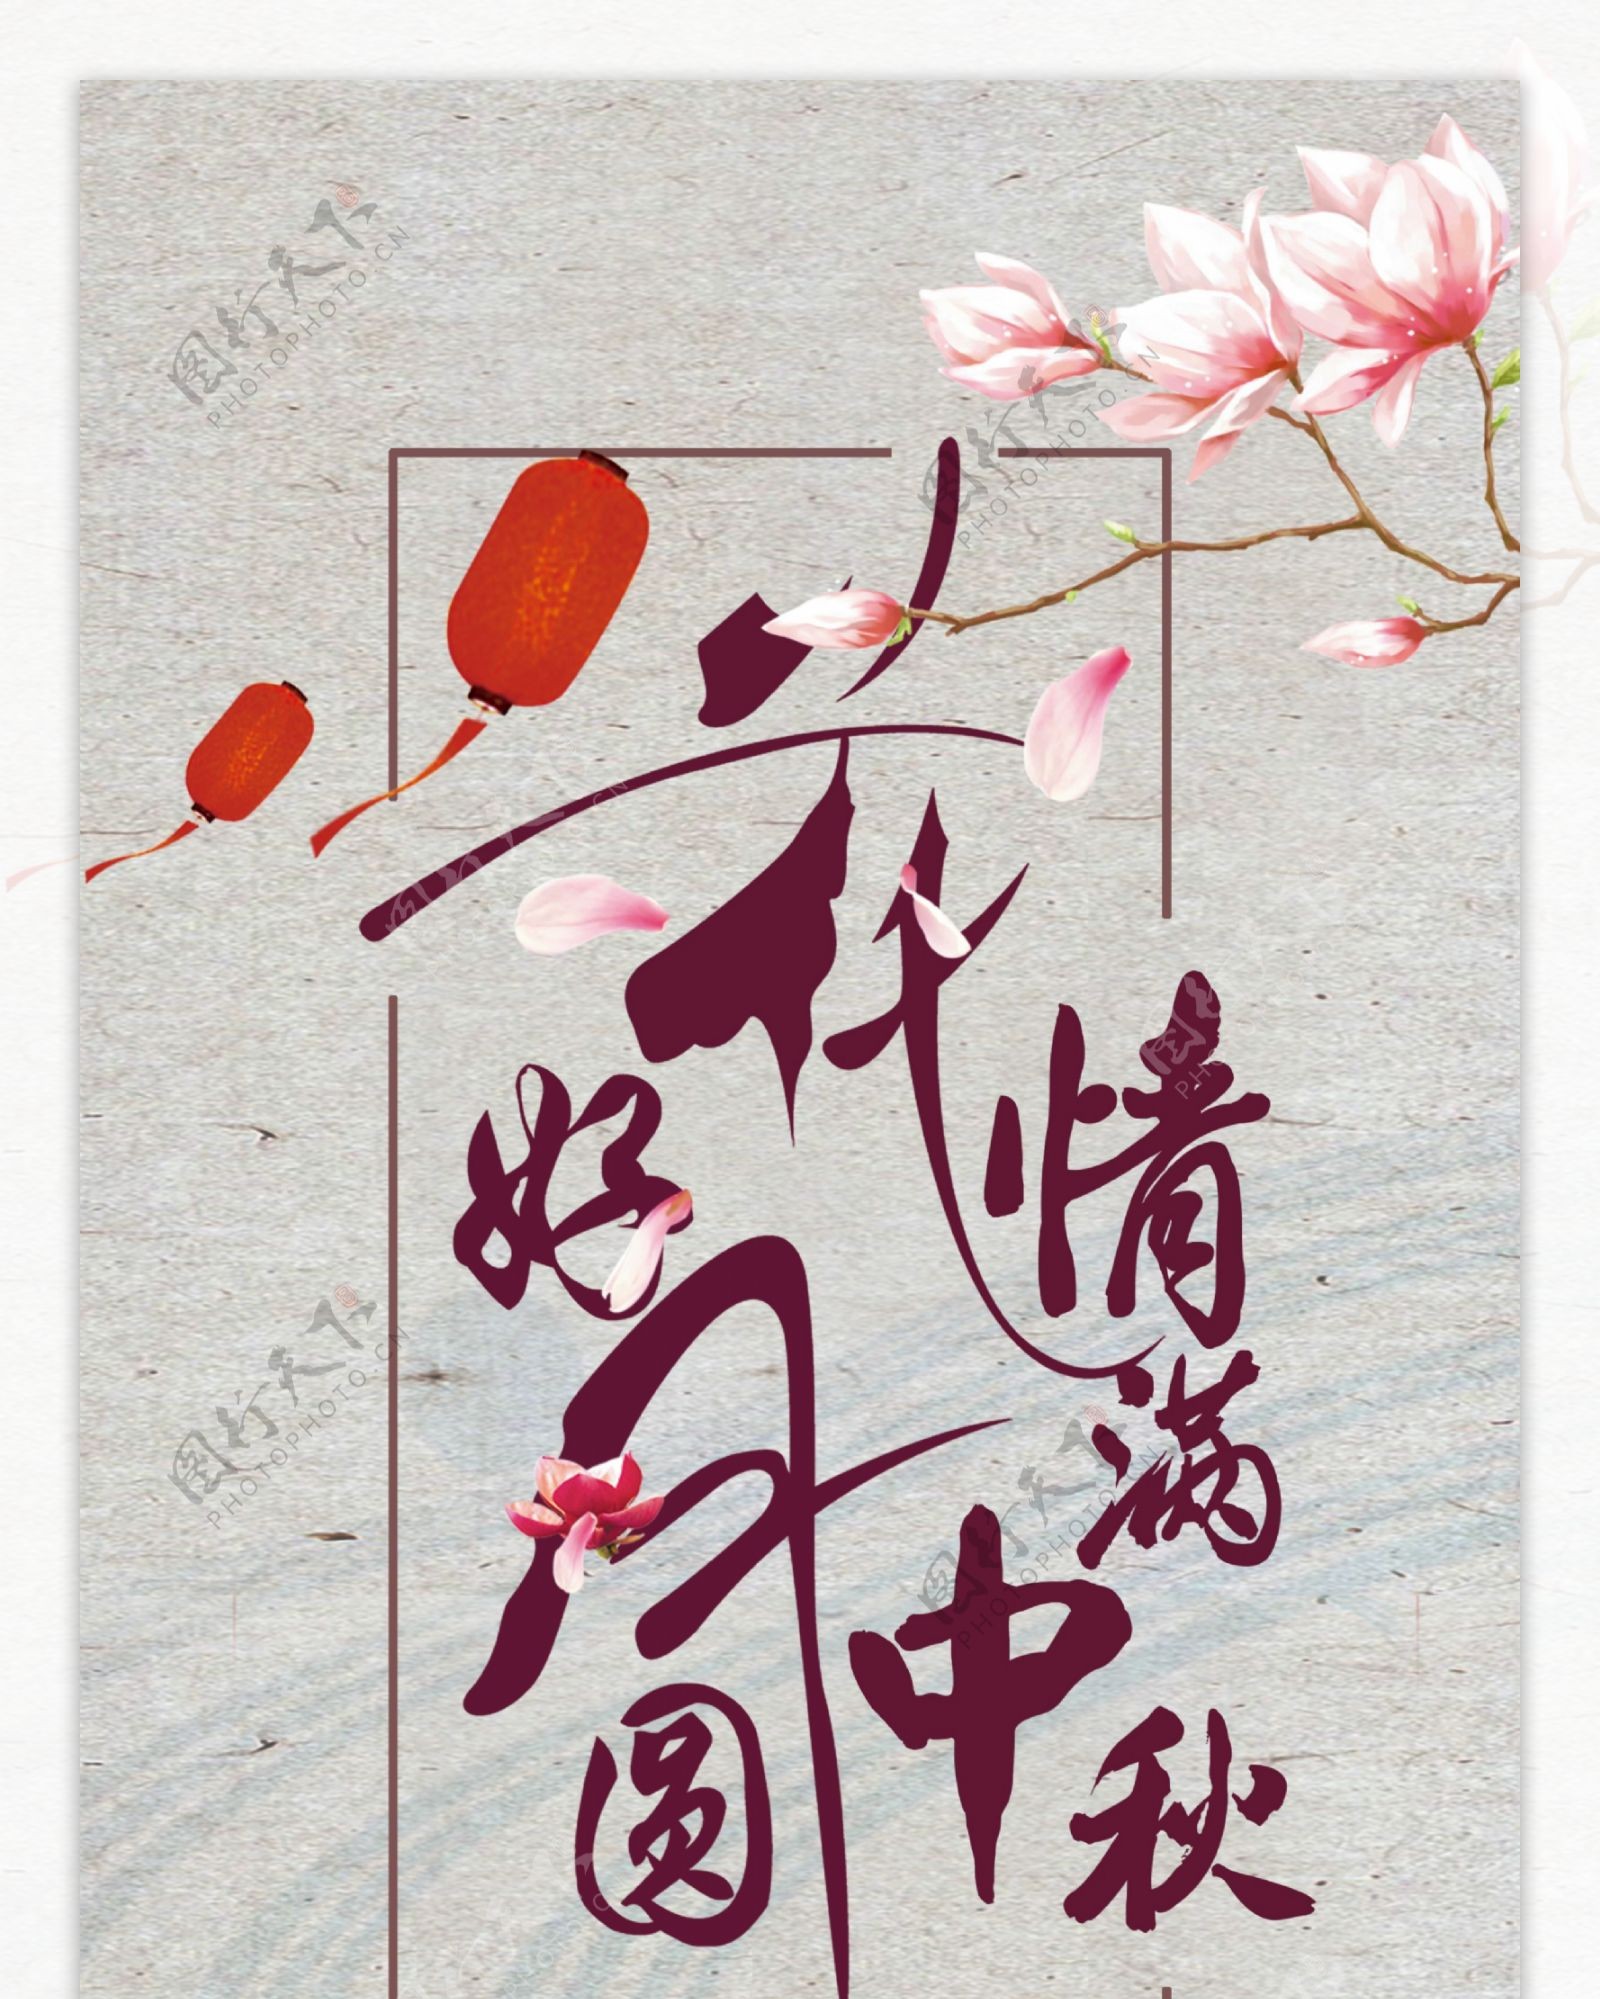 中国风手绘中秋节月饼美食促销展架